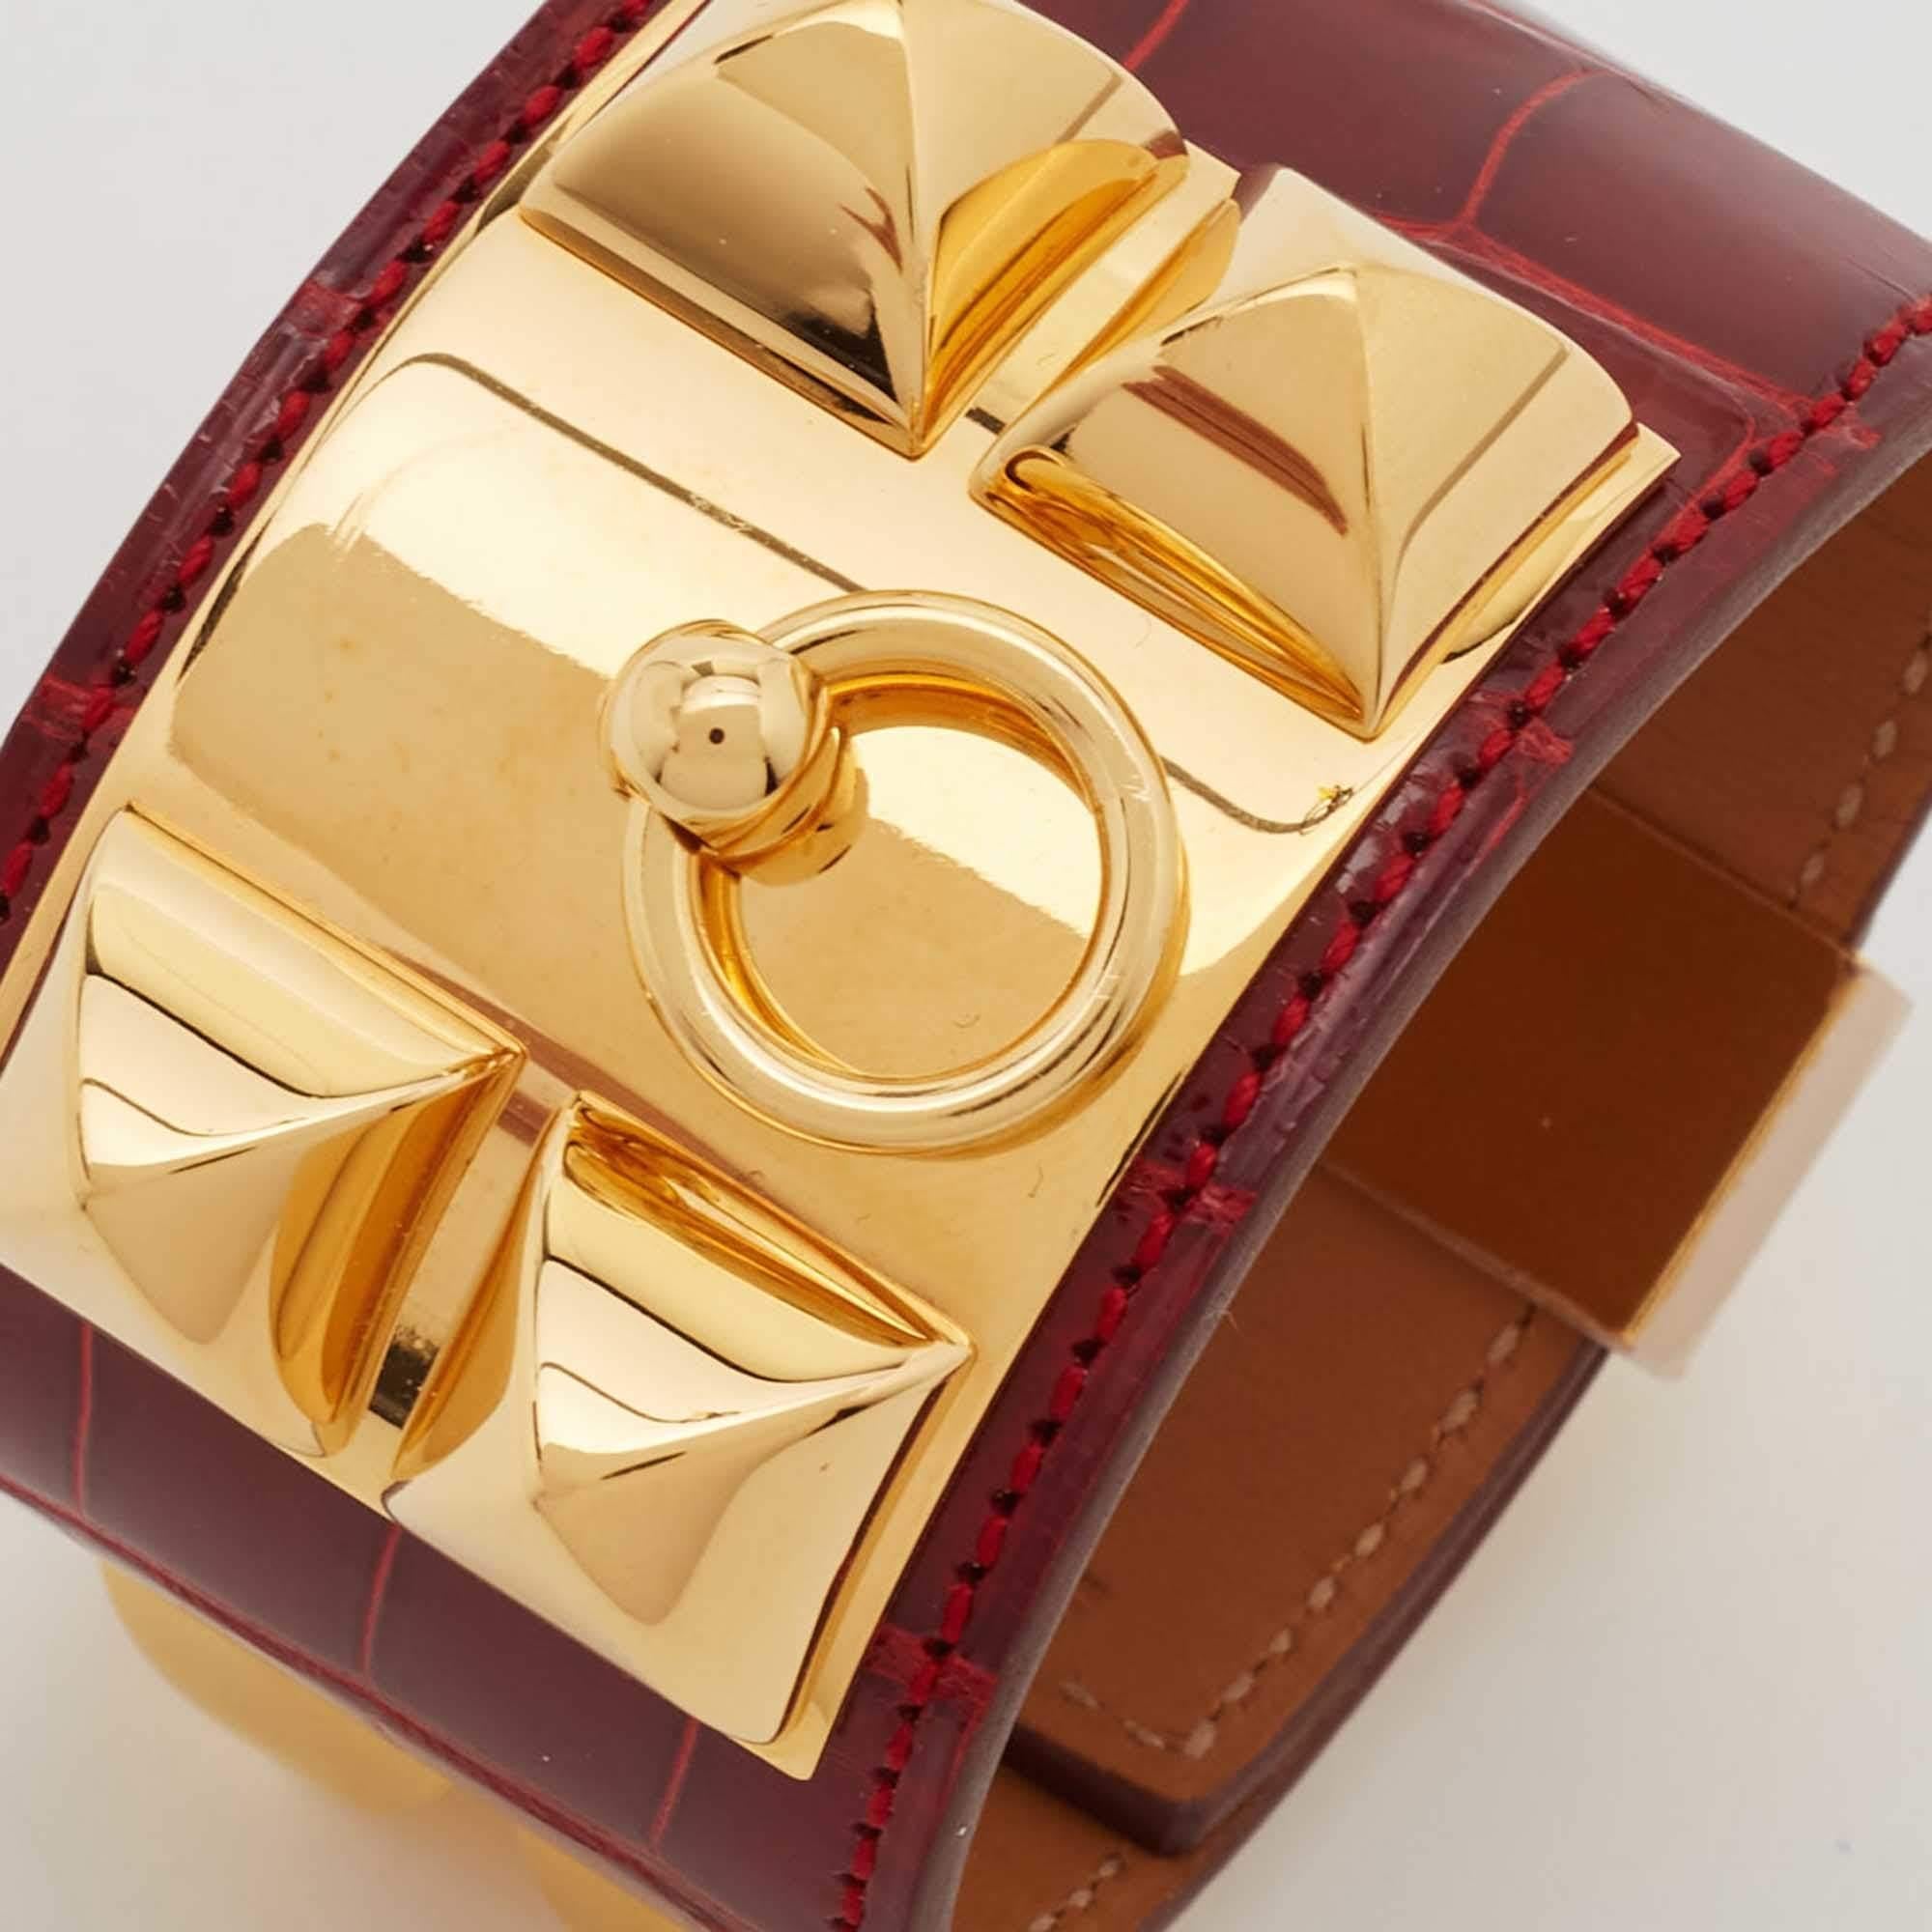 Hermès Collier de Chien Alligator Leather Gold Plated Bracelet 3